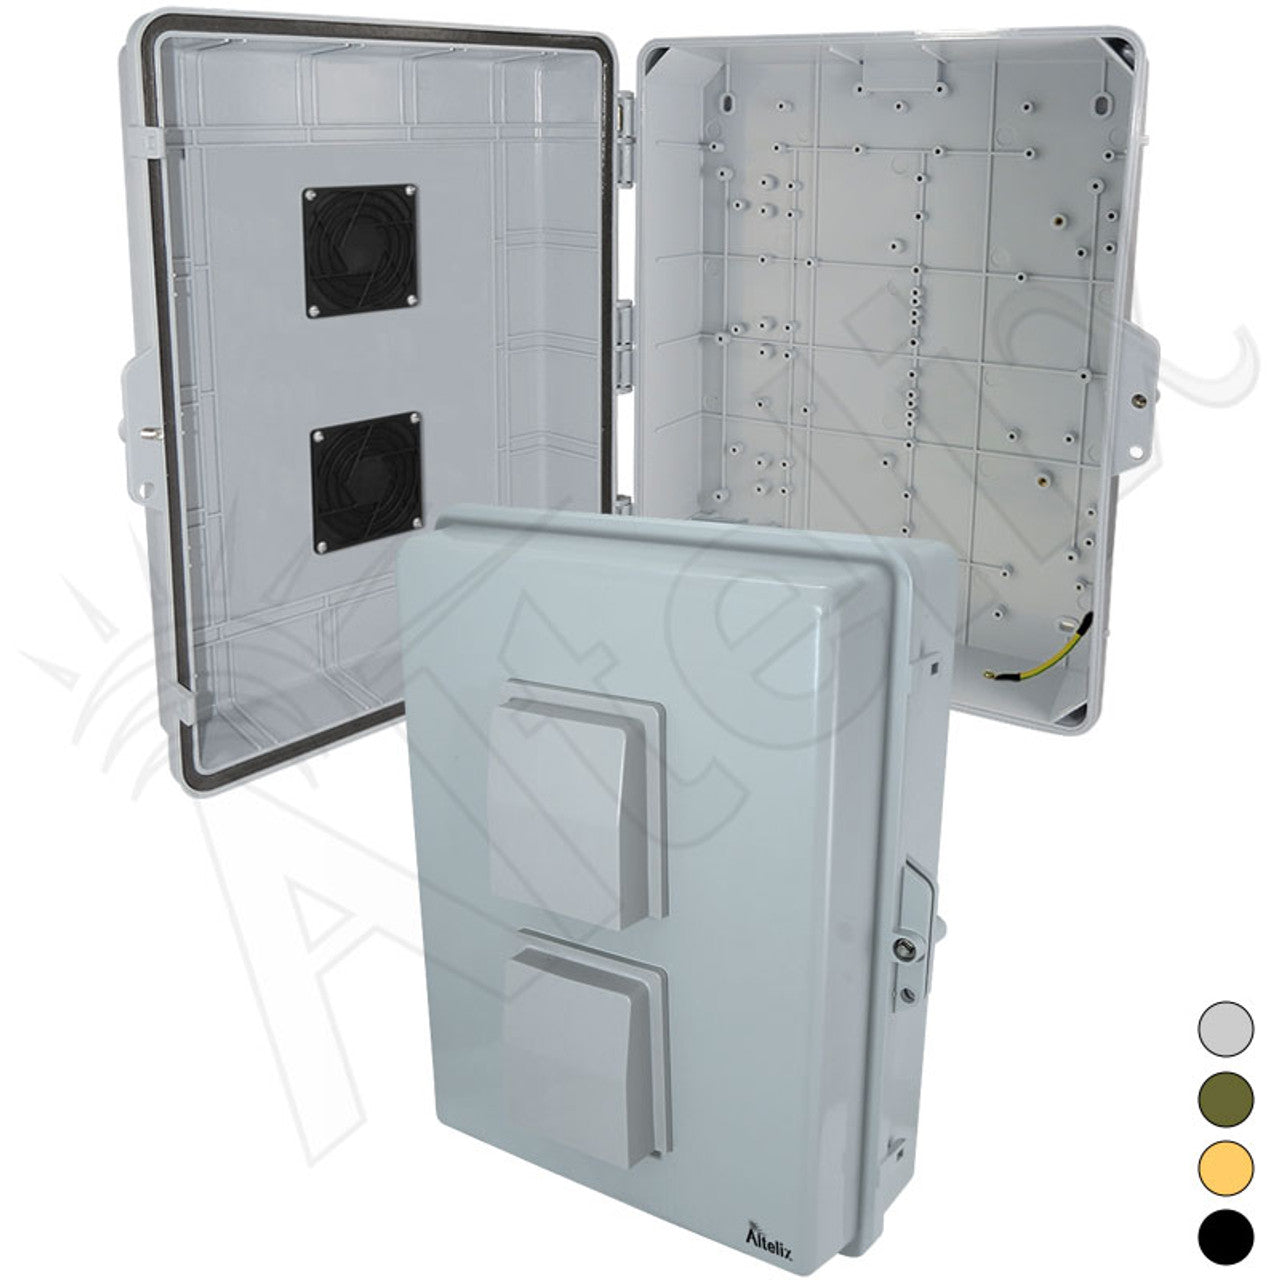 Altelix 17x14x6 PC + ABS Weatherproof Vented NEMA Enclosure with Hinged Door